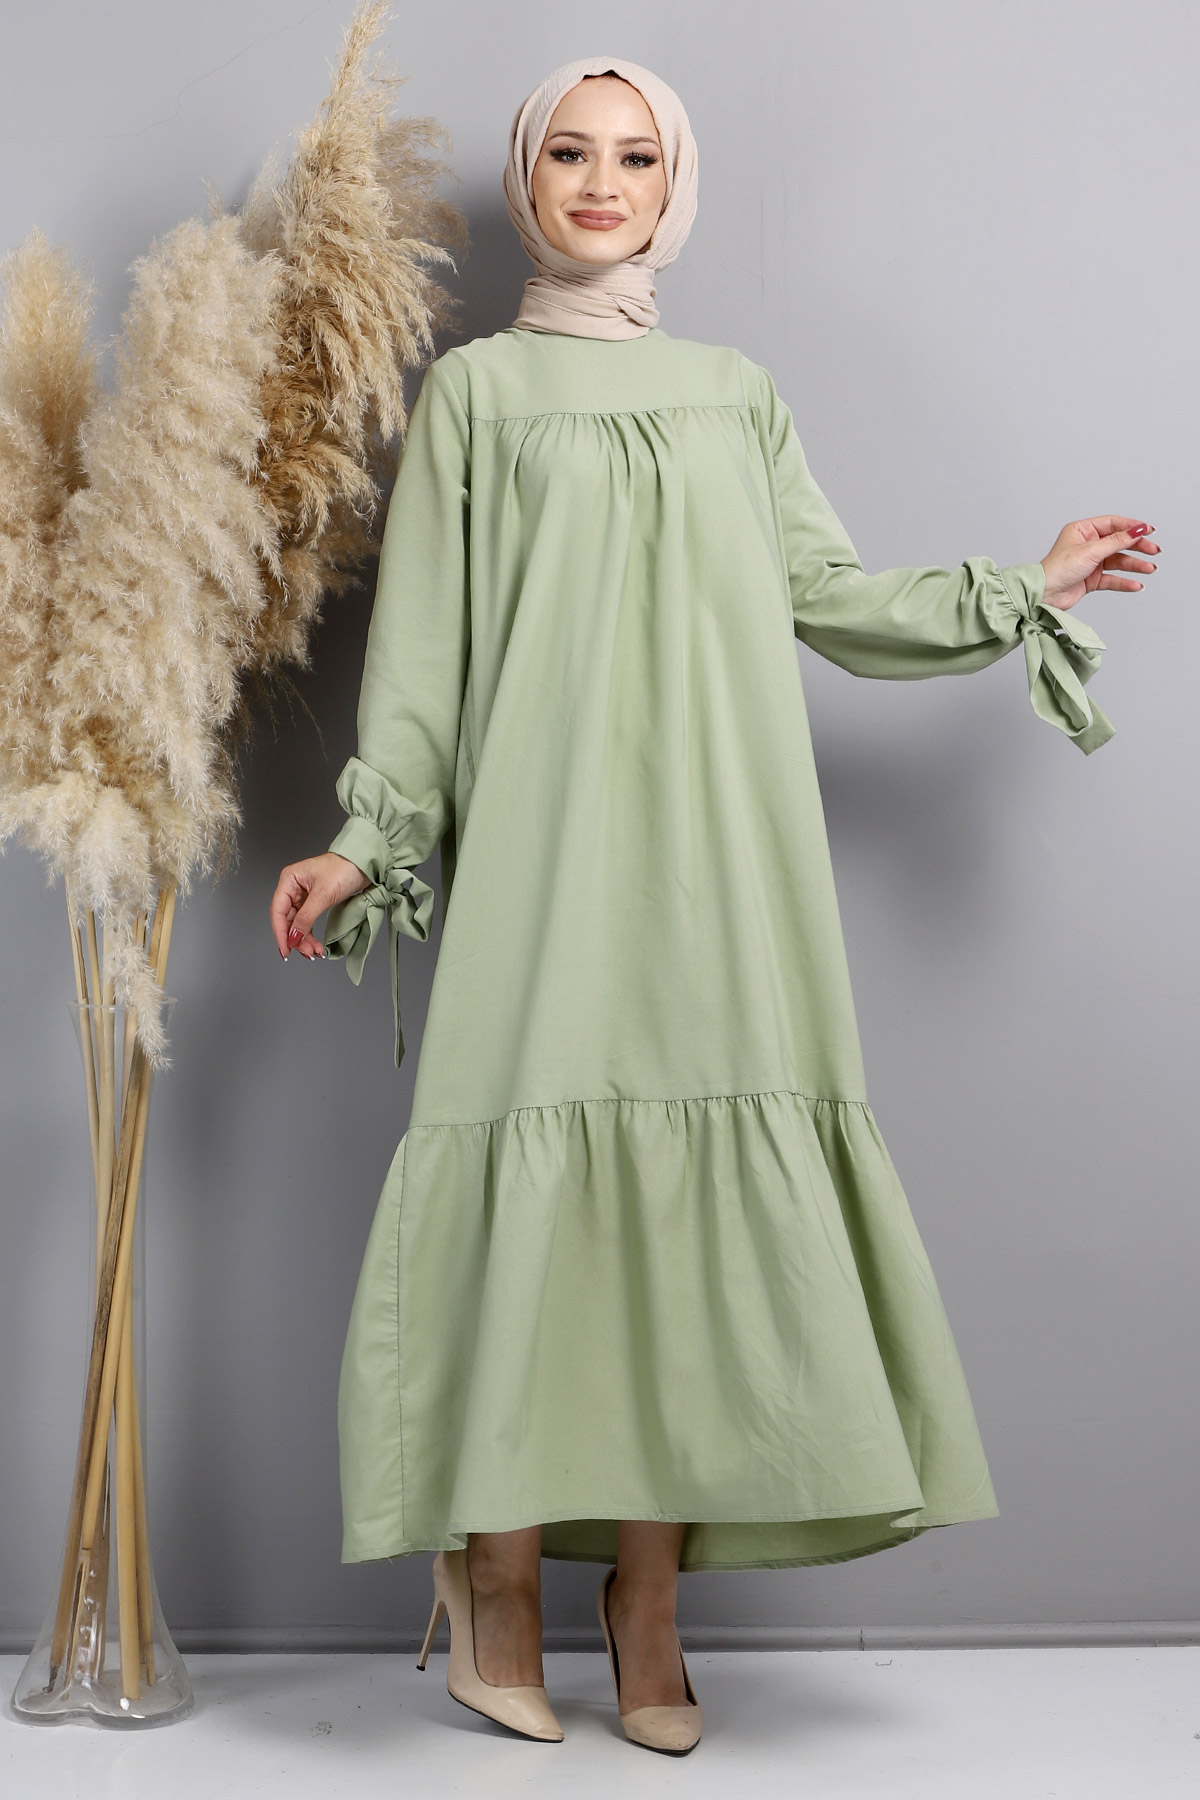 Tesettür Dünyası - Kol Ucu Bağlamalı Elbise TSD220609 Çağla Yeşili